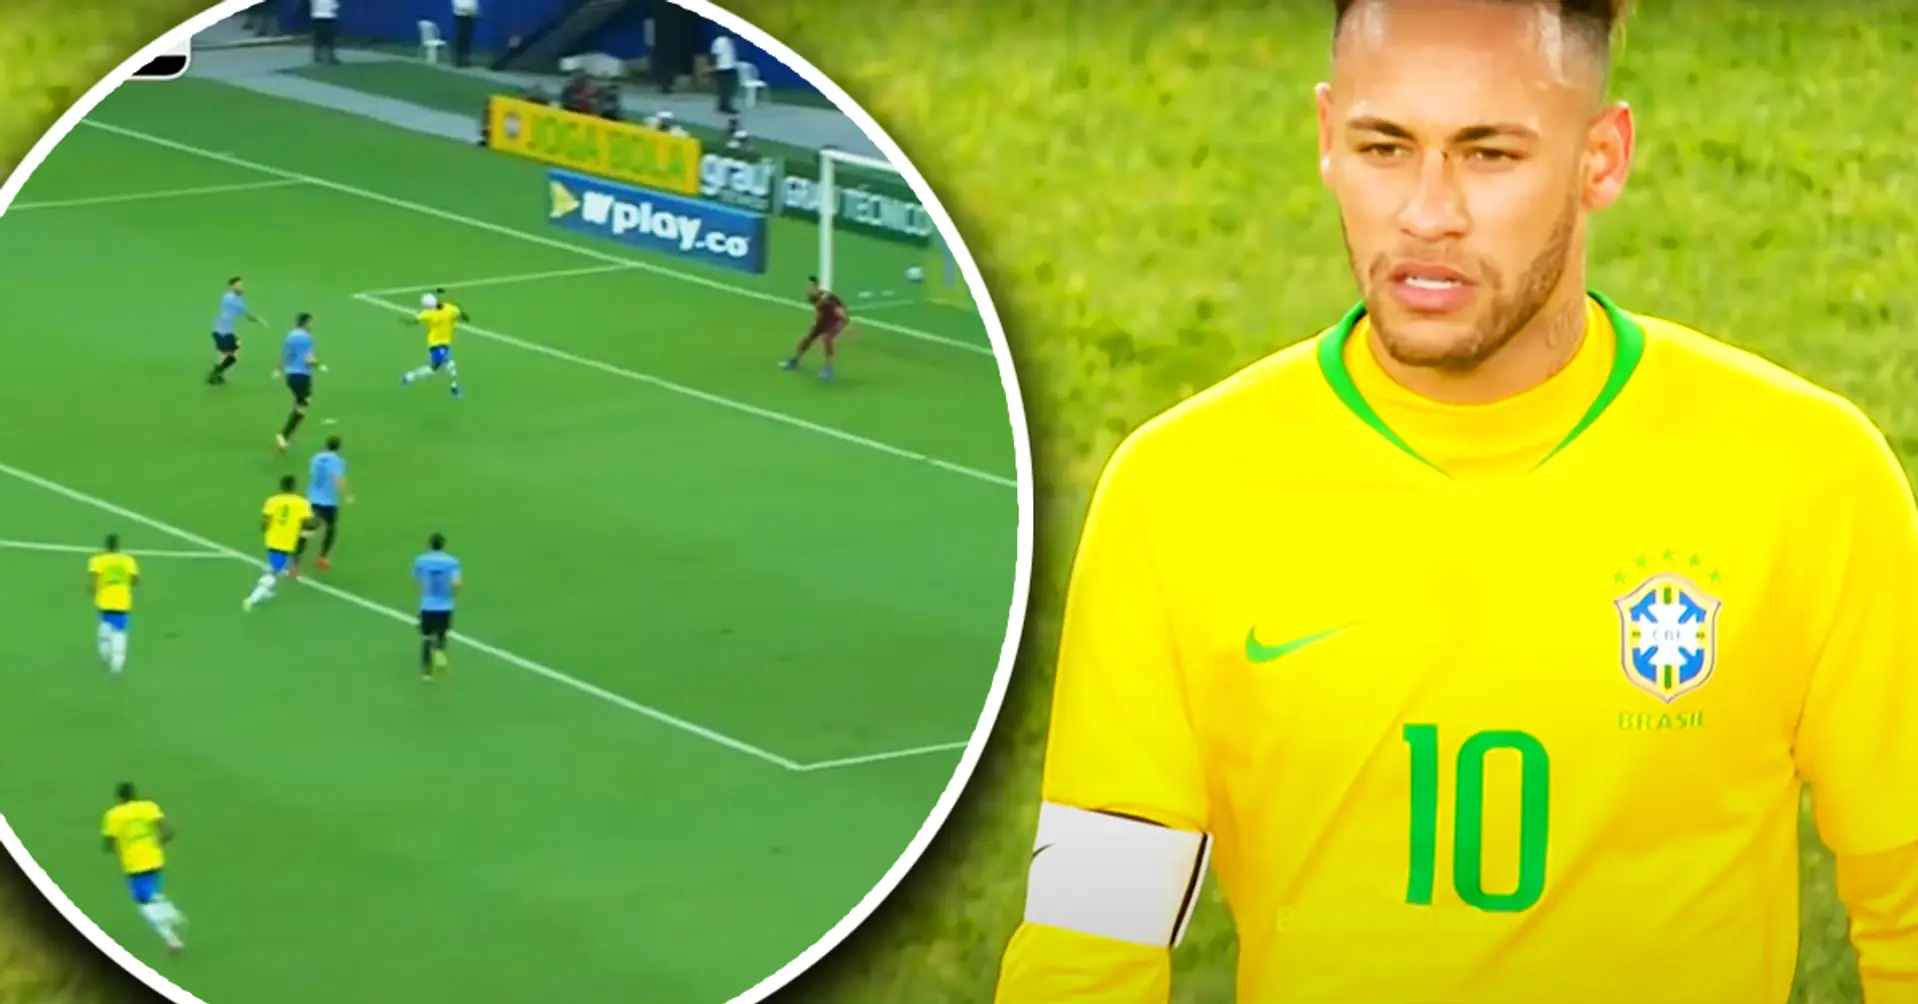 Brasilianische Magie: Neymar bringt 3 Uruguayer in Verlegenheit und schießt ein Tunnel-Tor